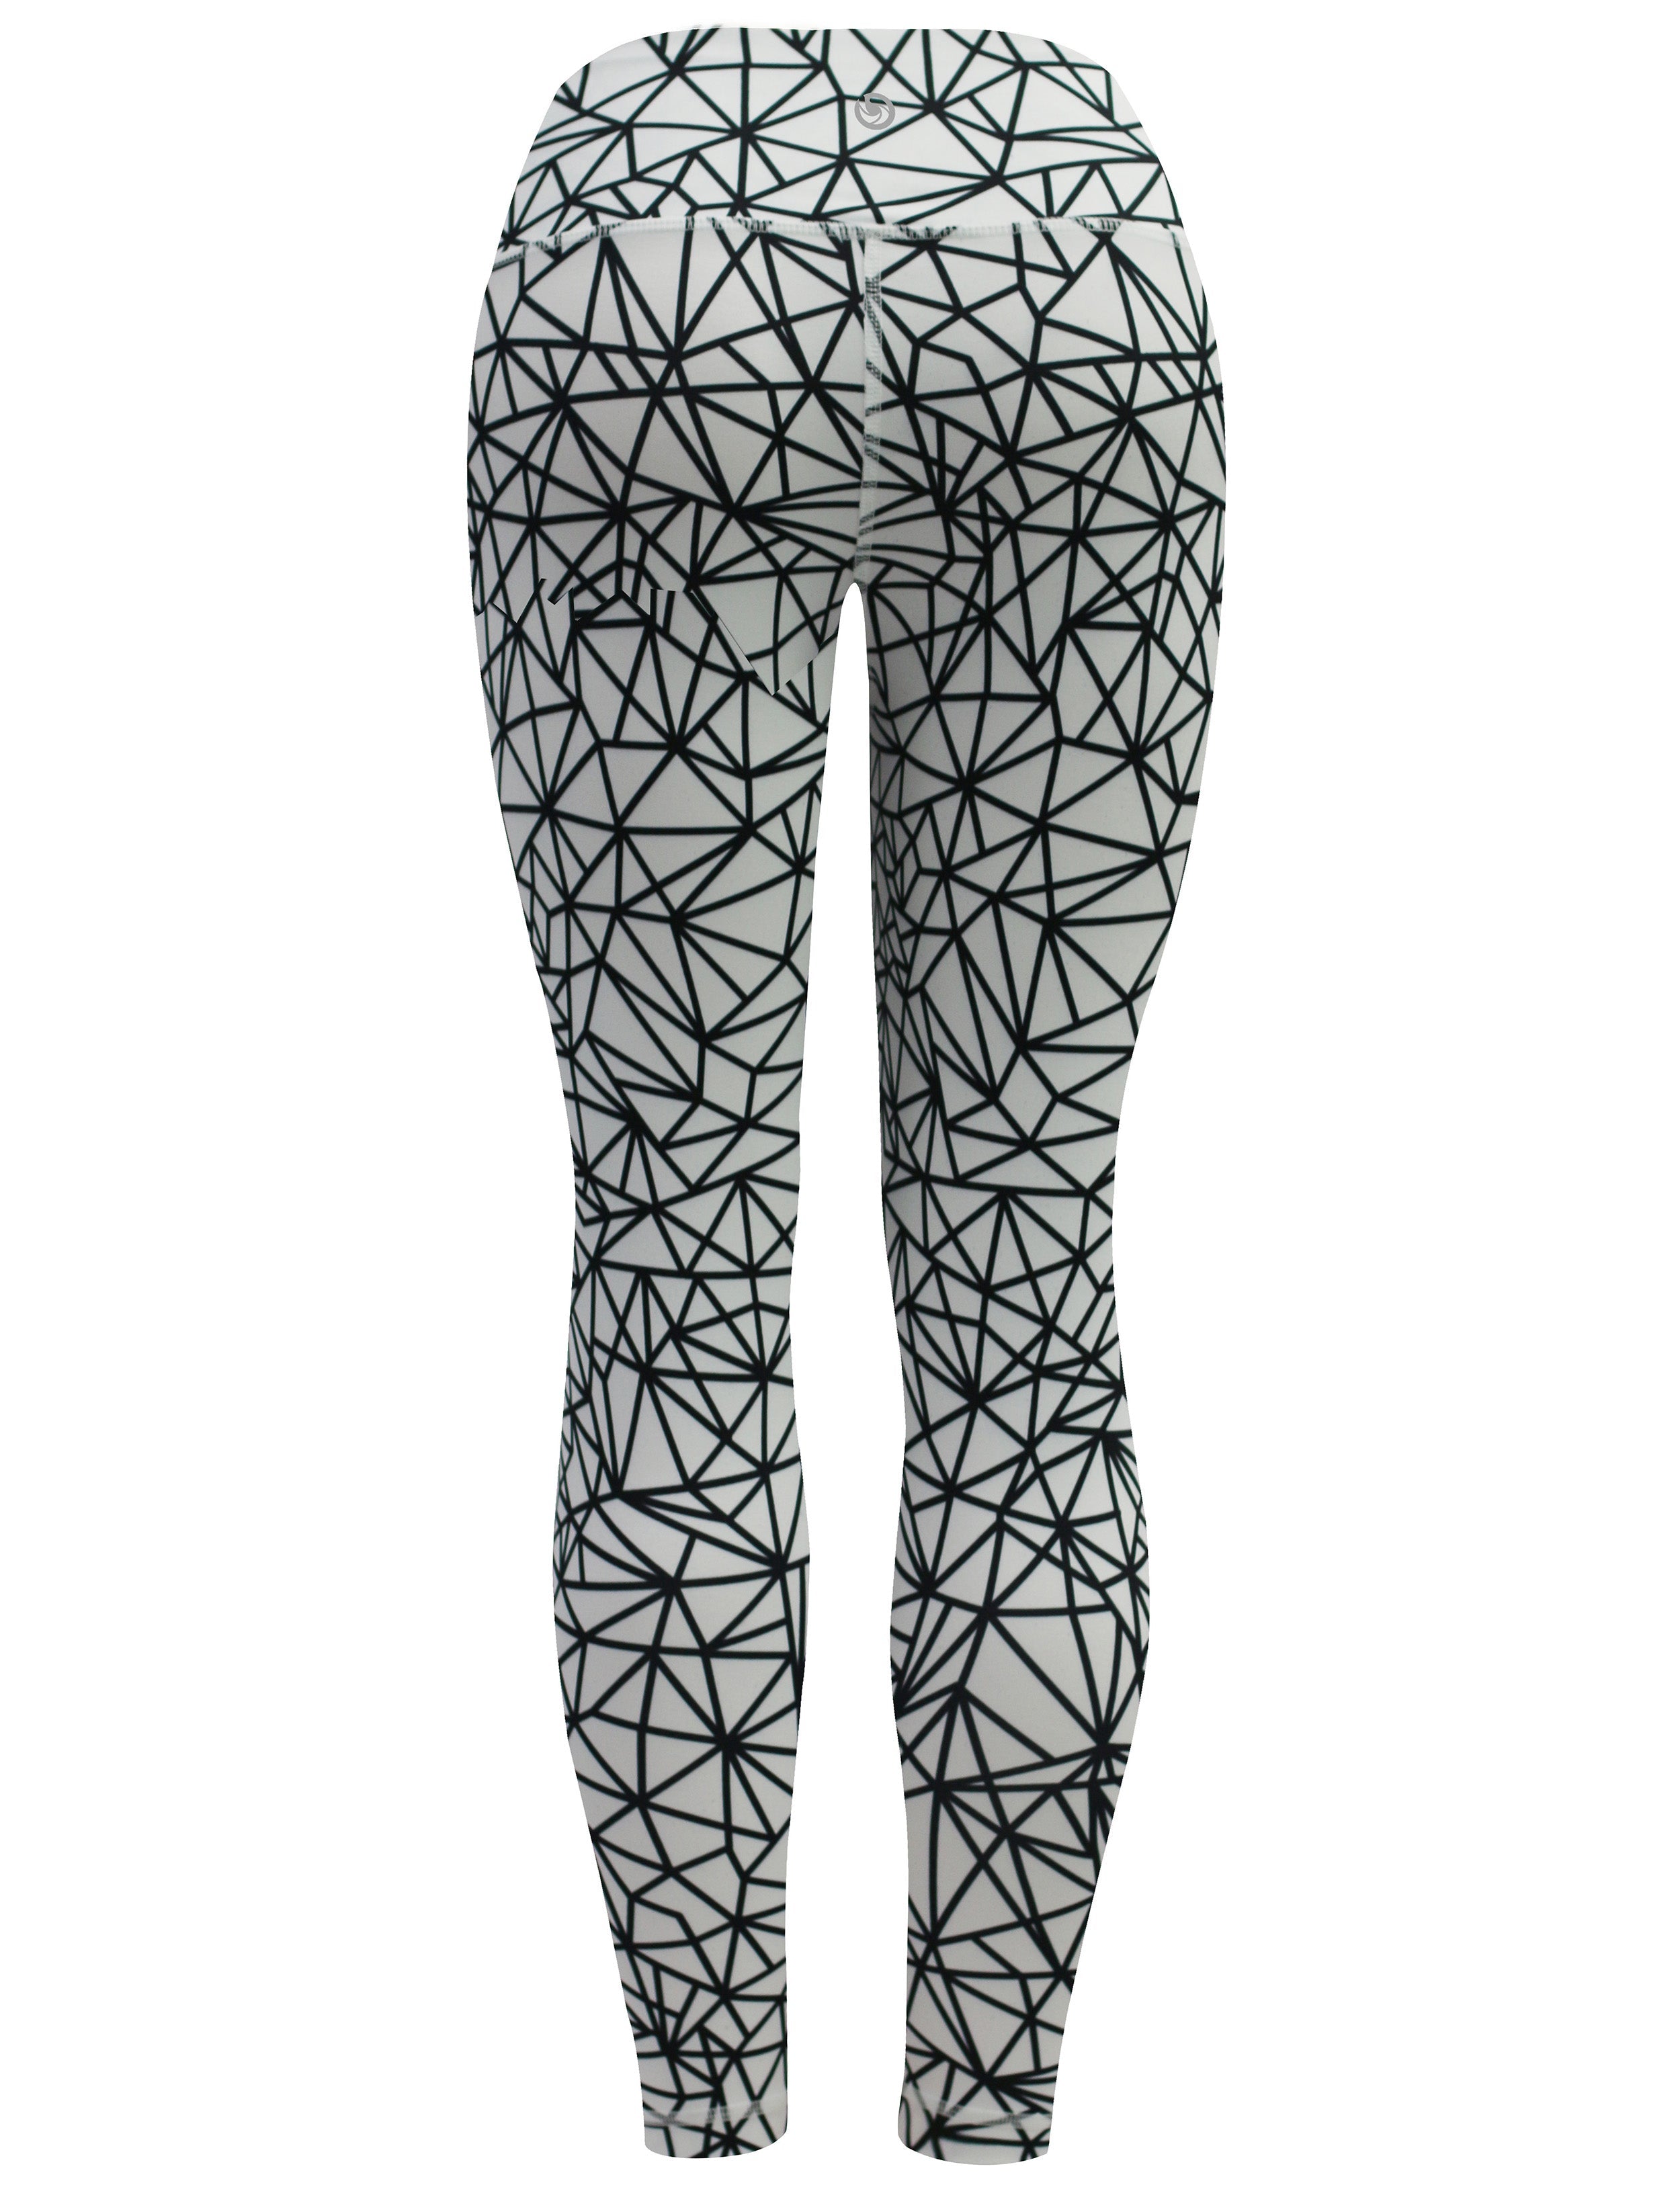 26" Printed Yoga Pants WHITESPIDER